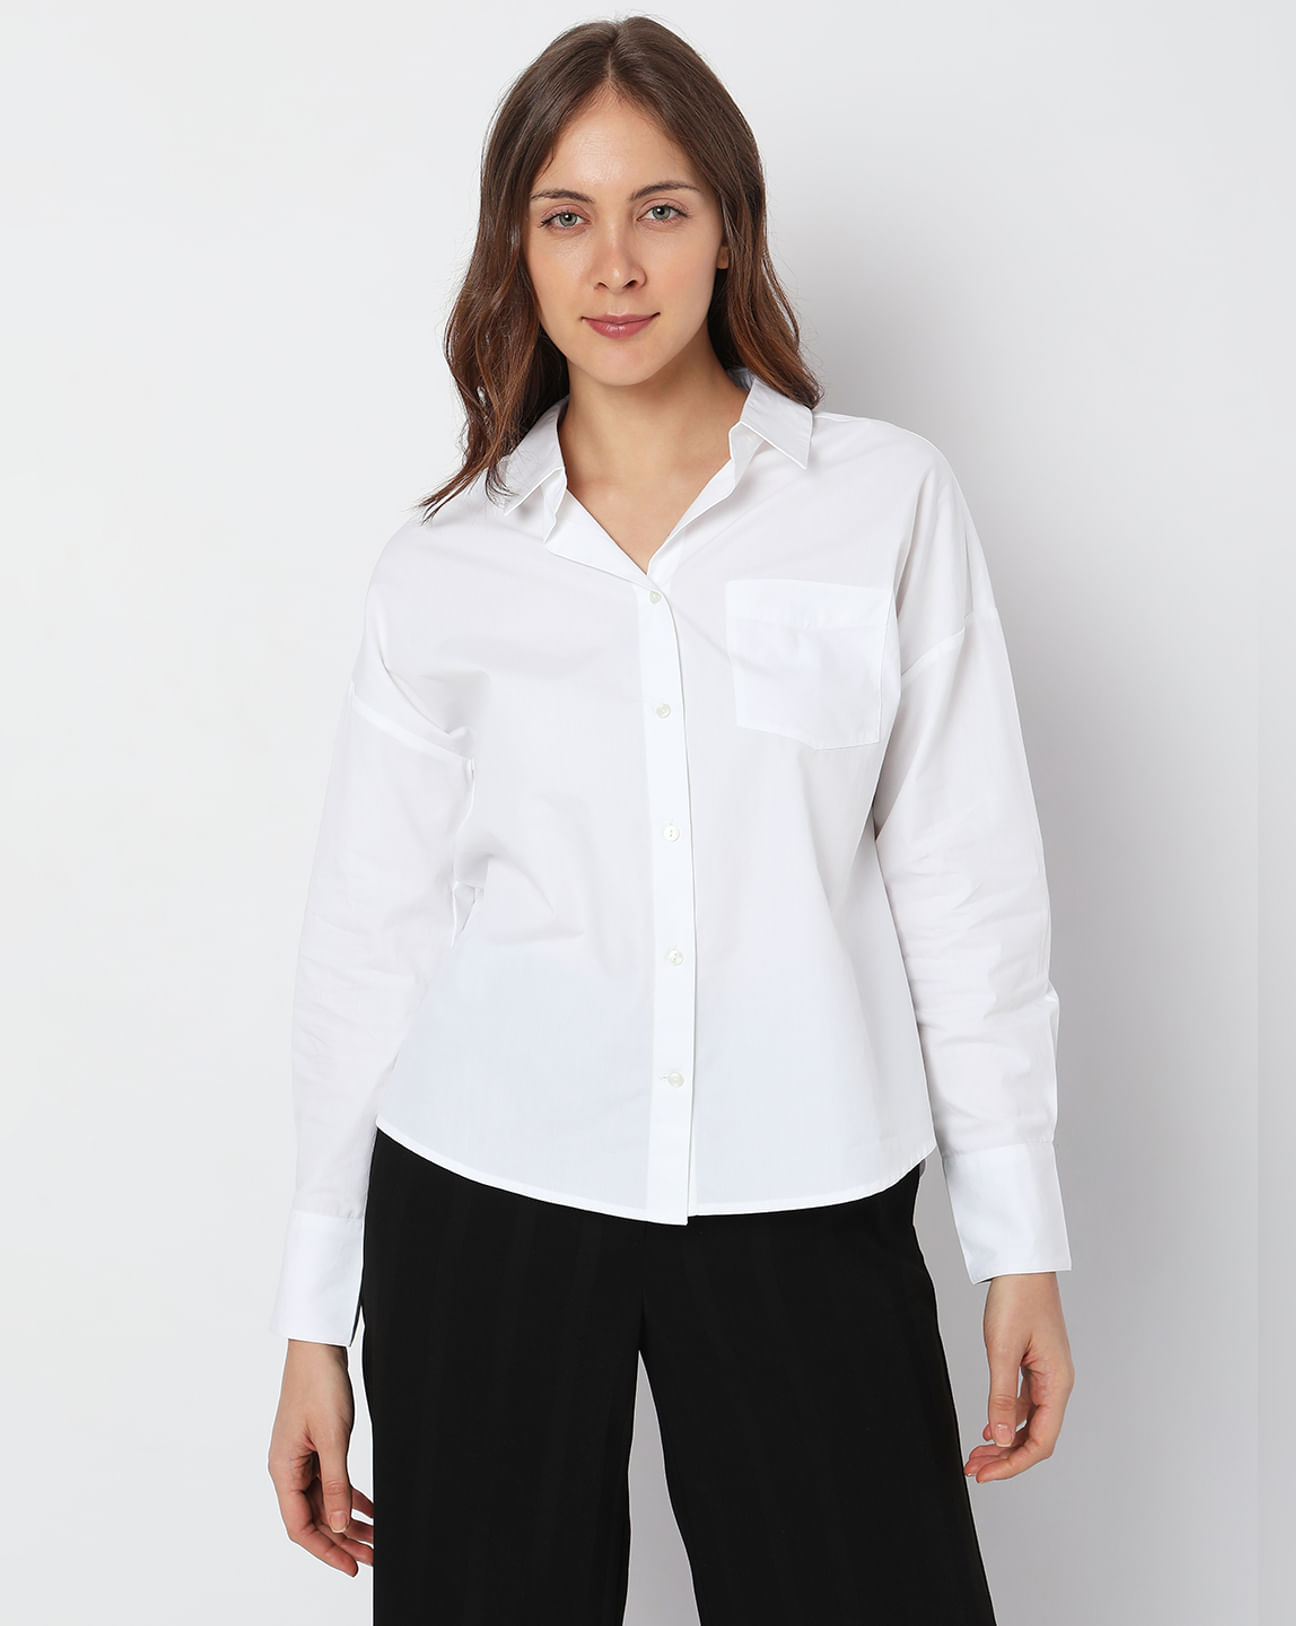 Buy White Formal Shirt For Women Online in India | VeroModa